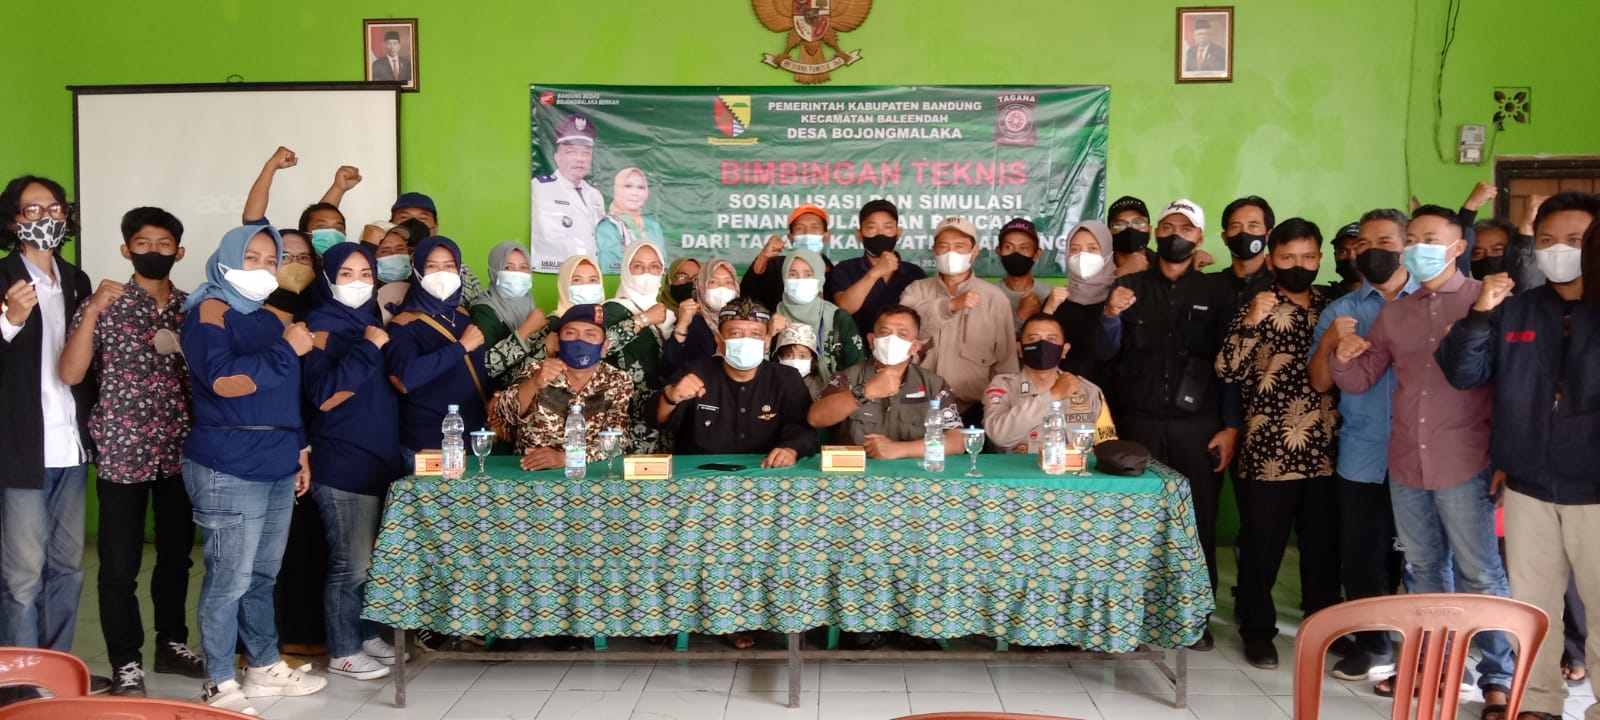 TAGANA Kabupaten Bandung Laksanakan Bimtek, Sosialisasi dan Simulasi Penanggulangan Bencana